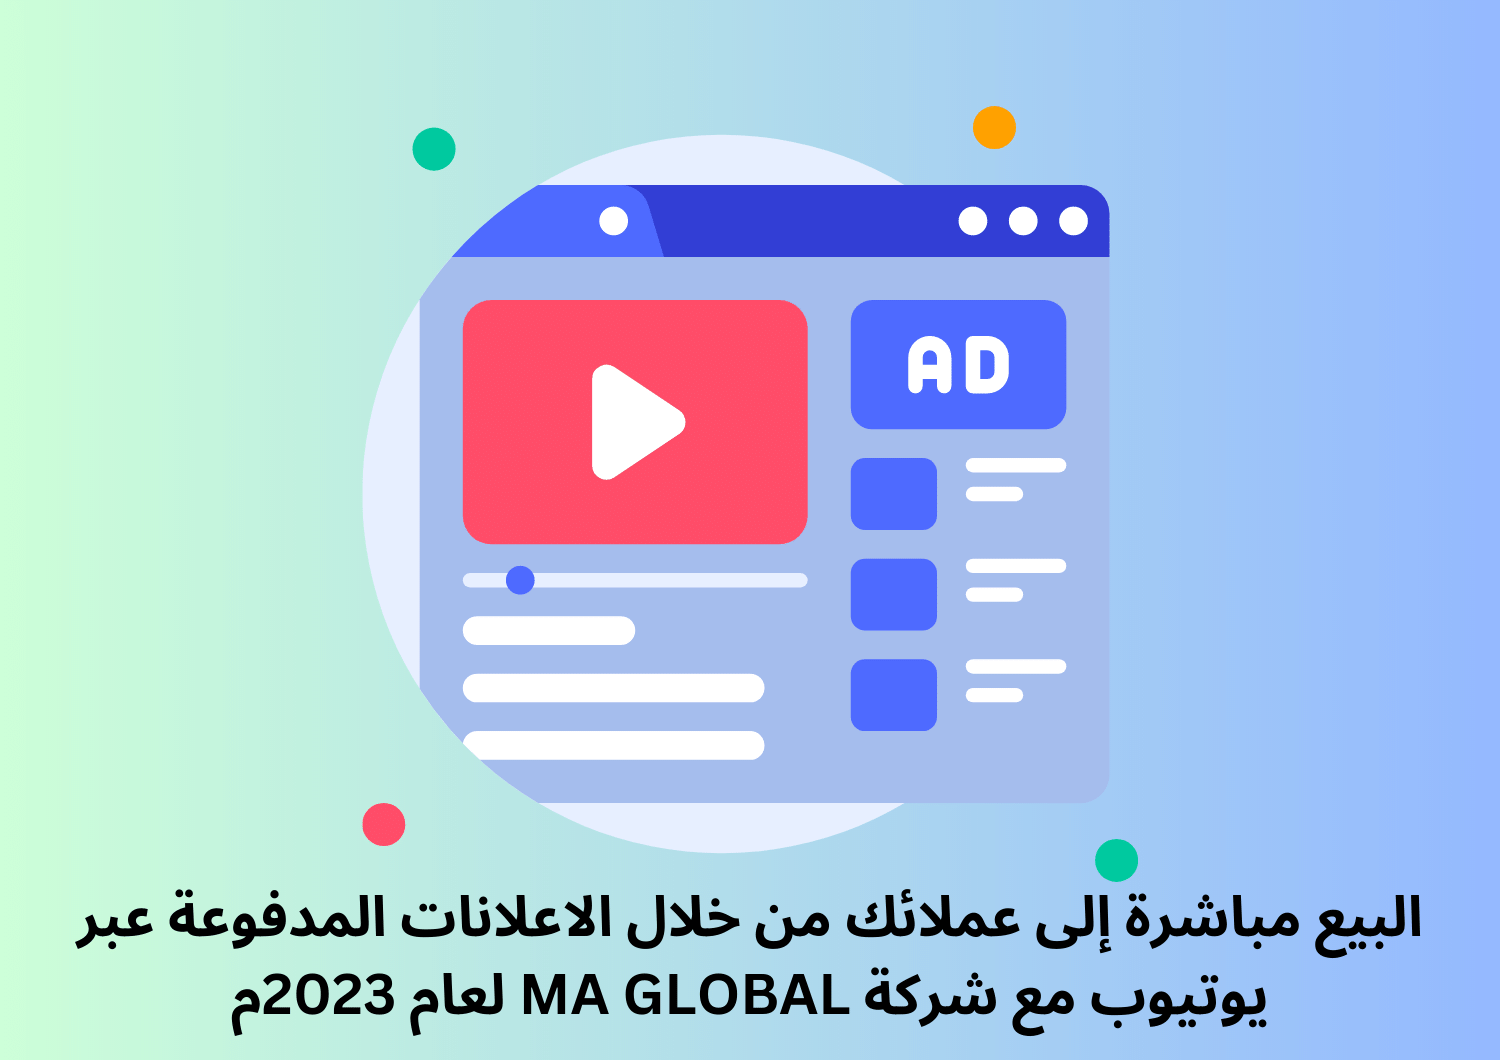 البيع مباشرة إلى عملائك من خلال الاعلانات المدفوعة عبر يوتيوب مع شركة MA GLOBAL لعام 2023م